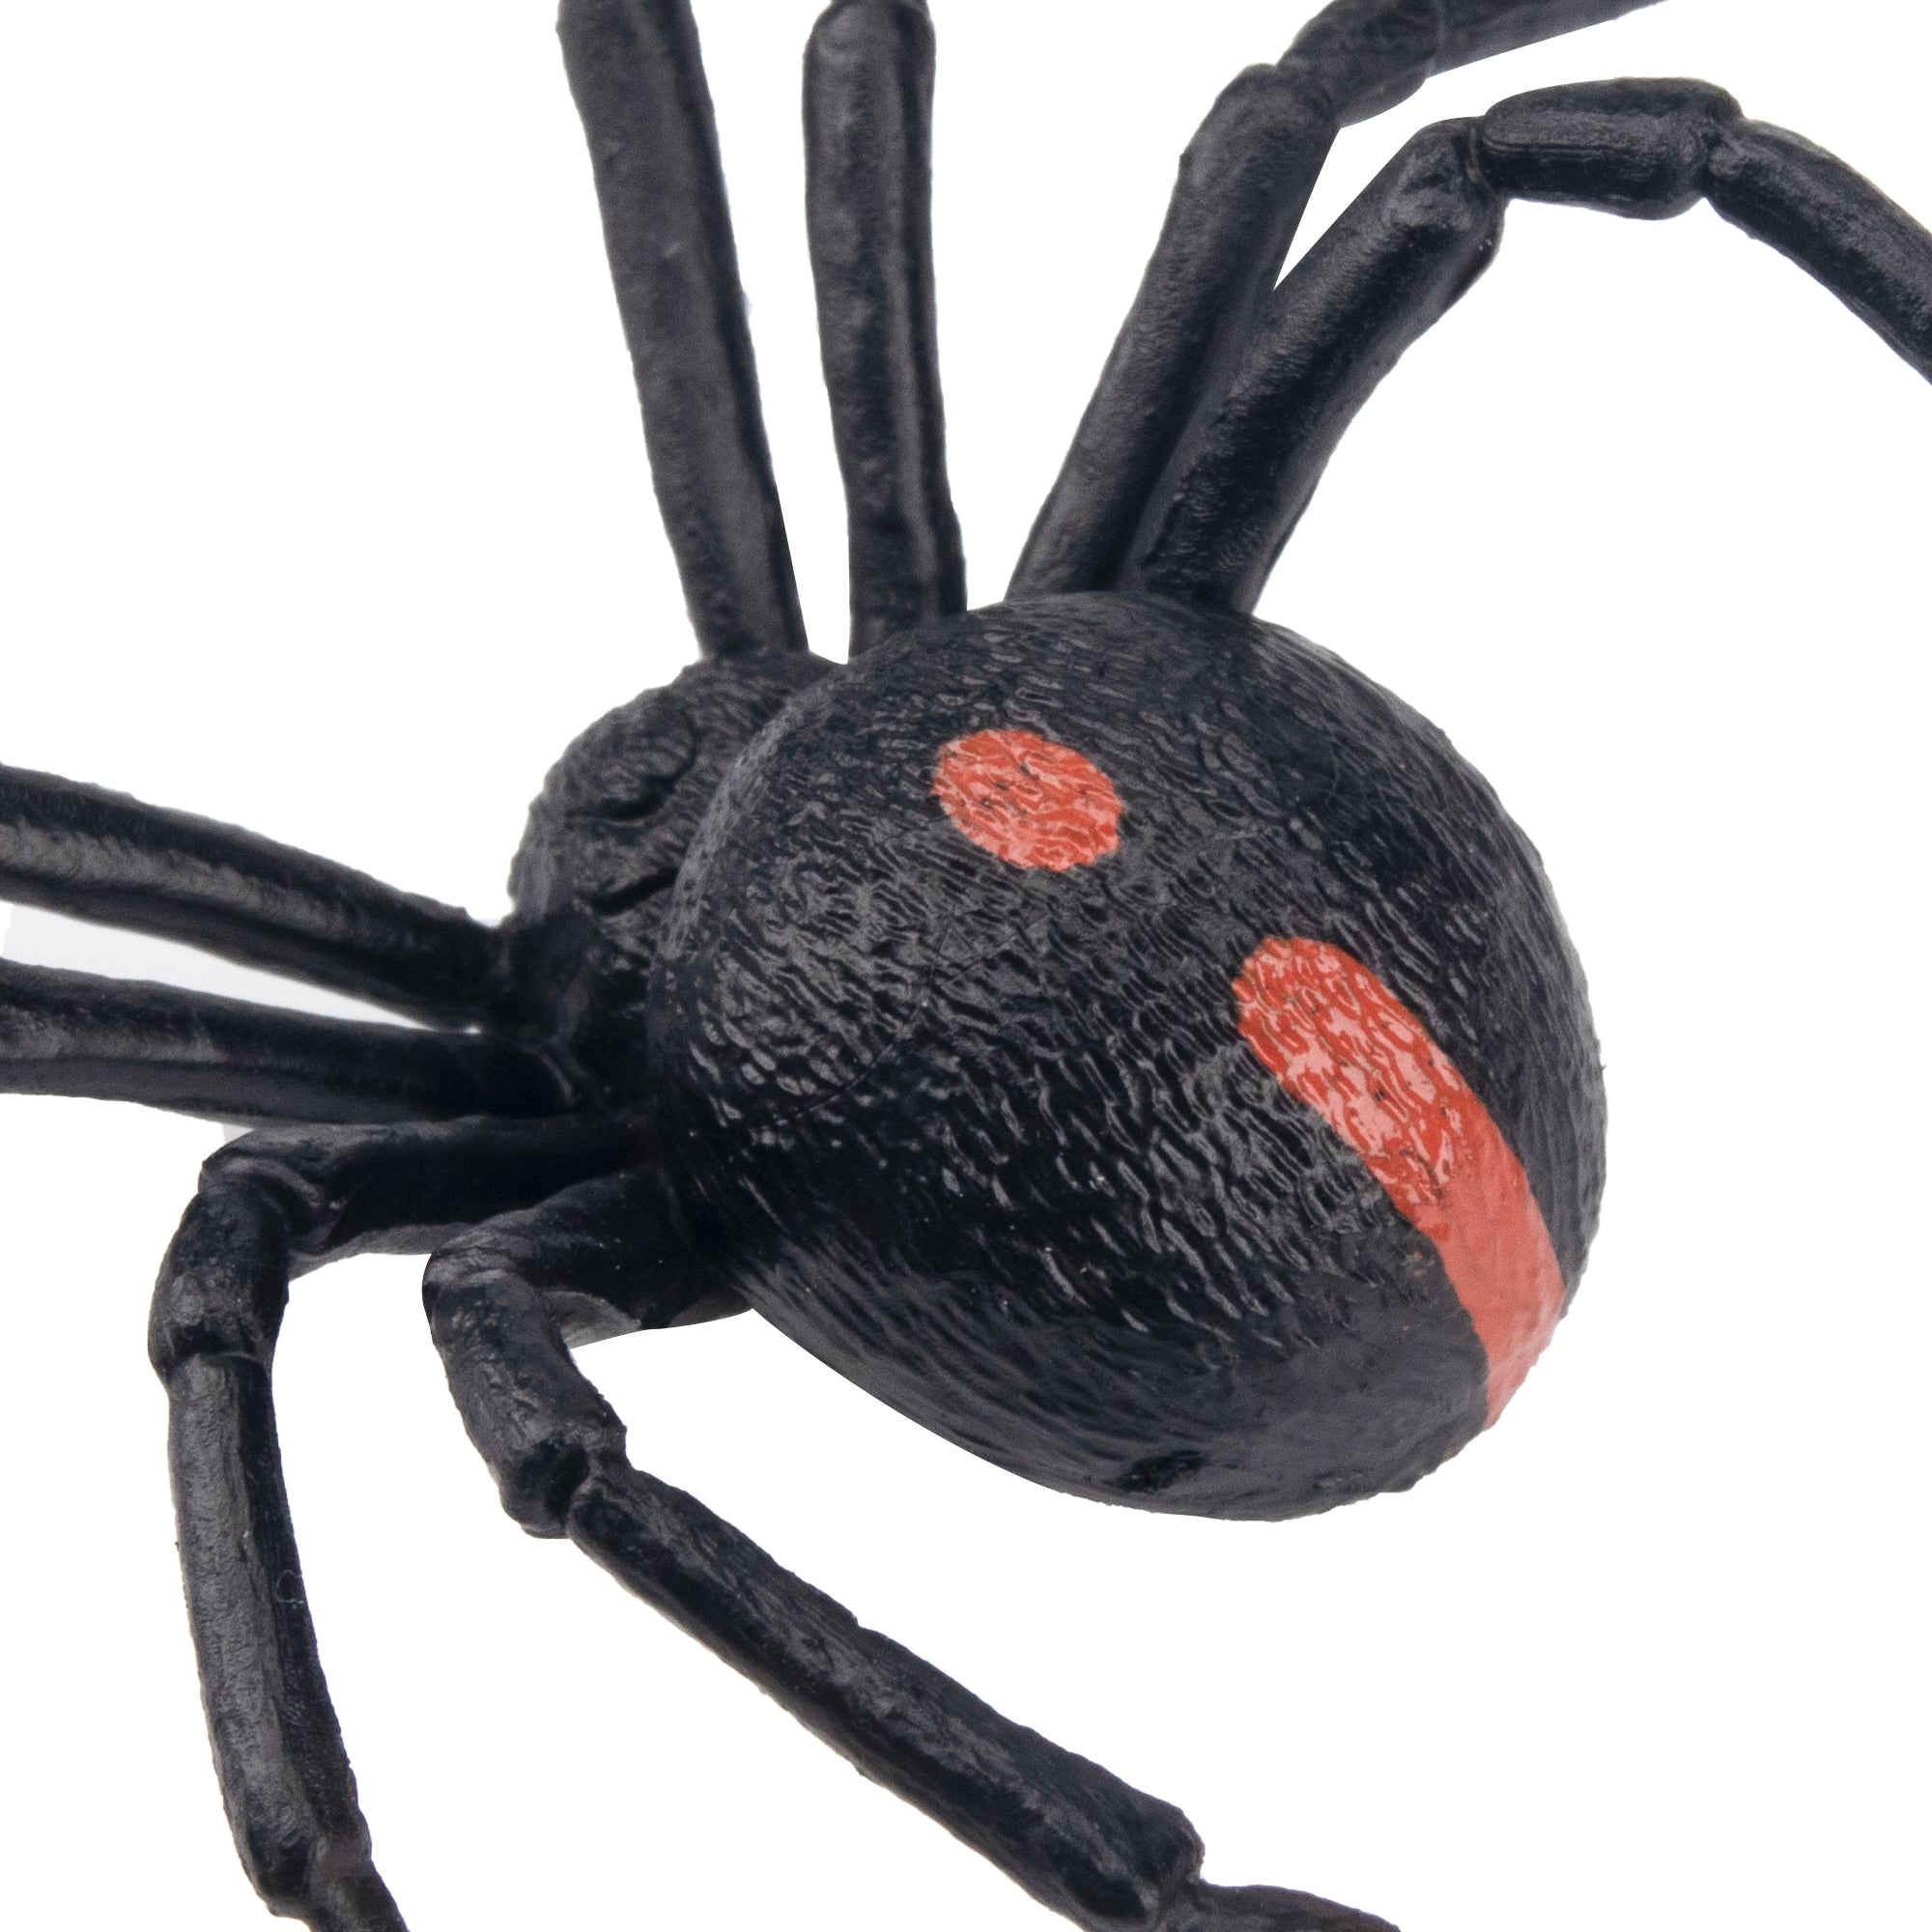 Toymany Black Widow Spider Figurine Toy-detail